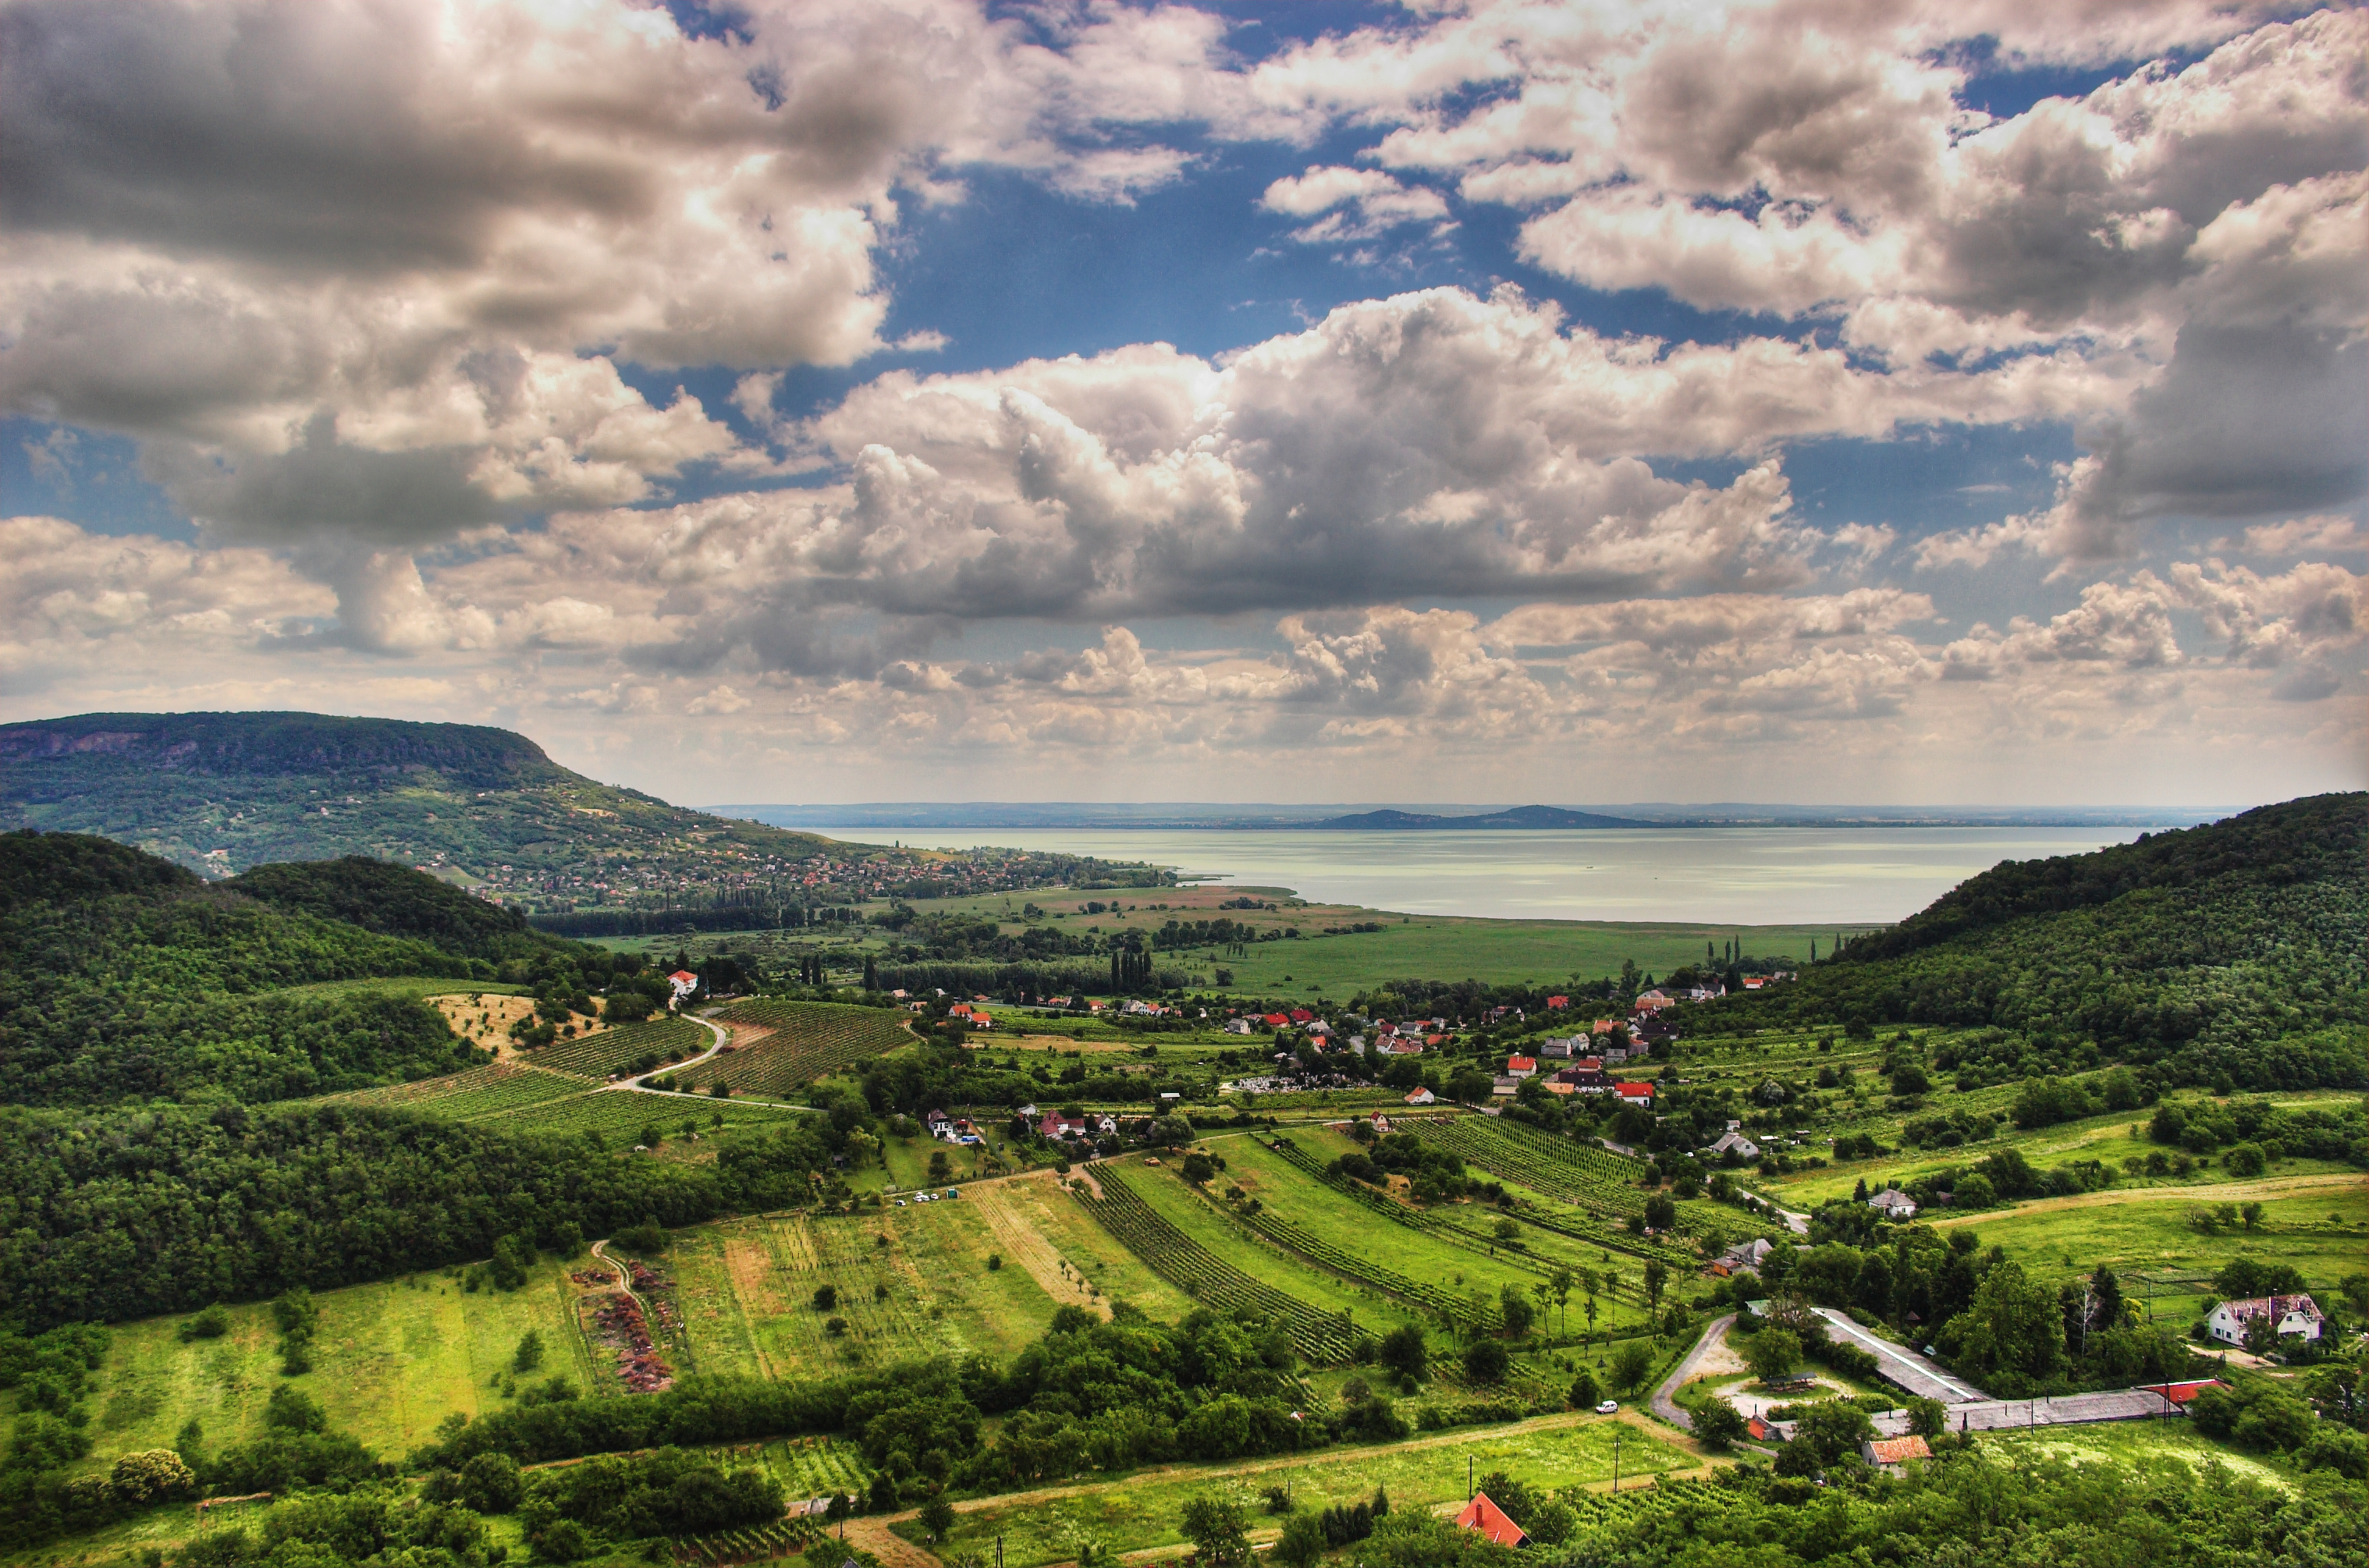 File:Balaton Hungary Landscape.jpg - Wikimedia Commons